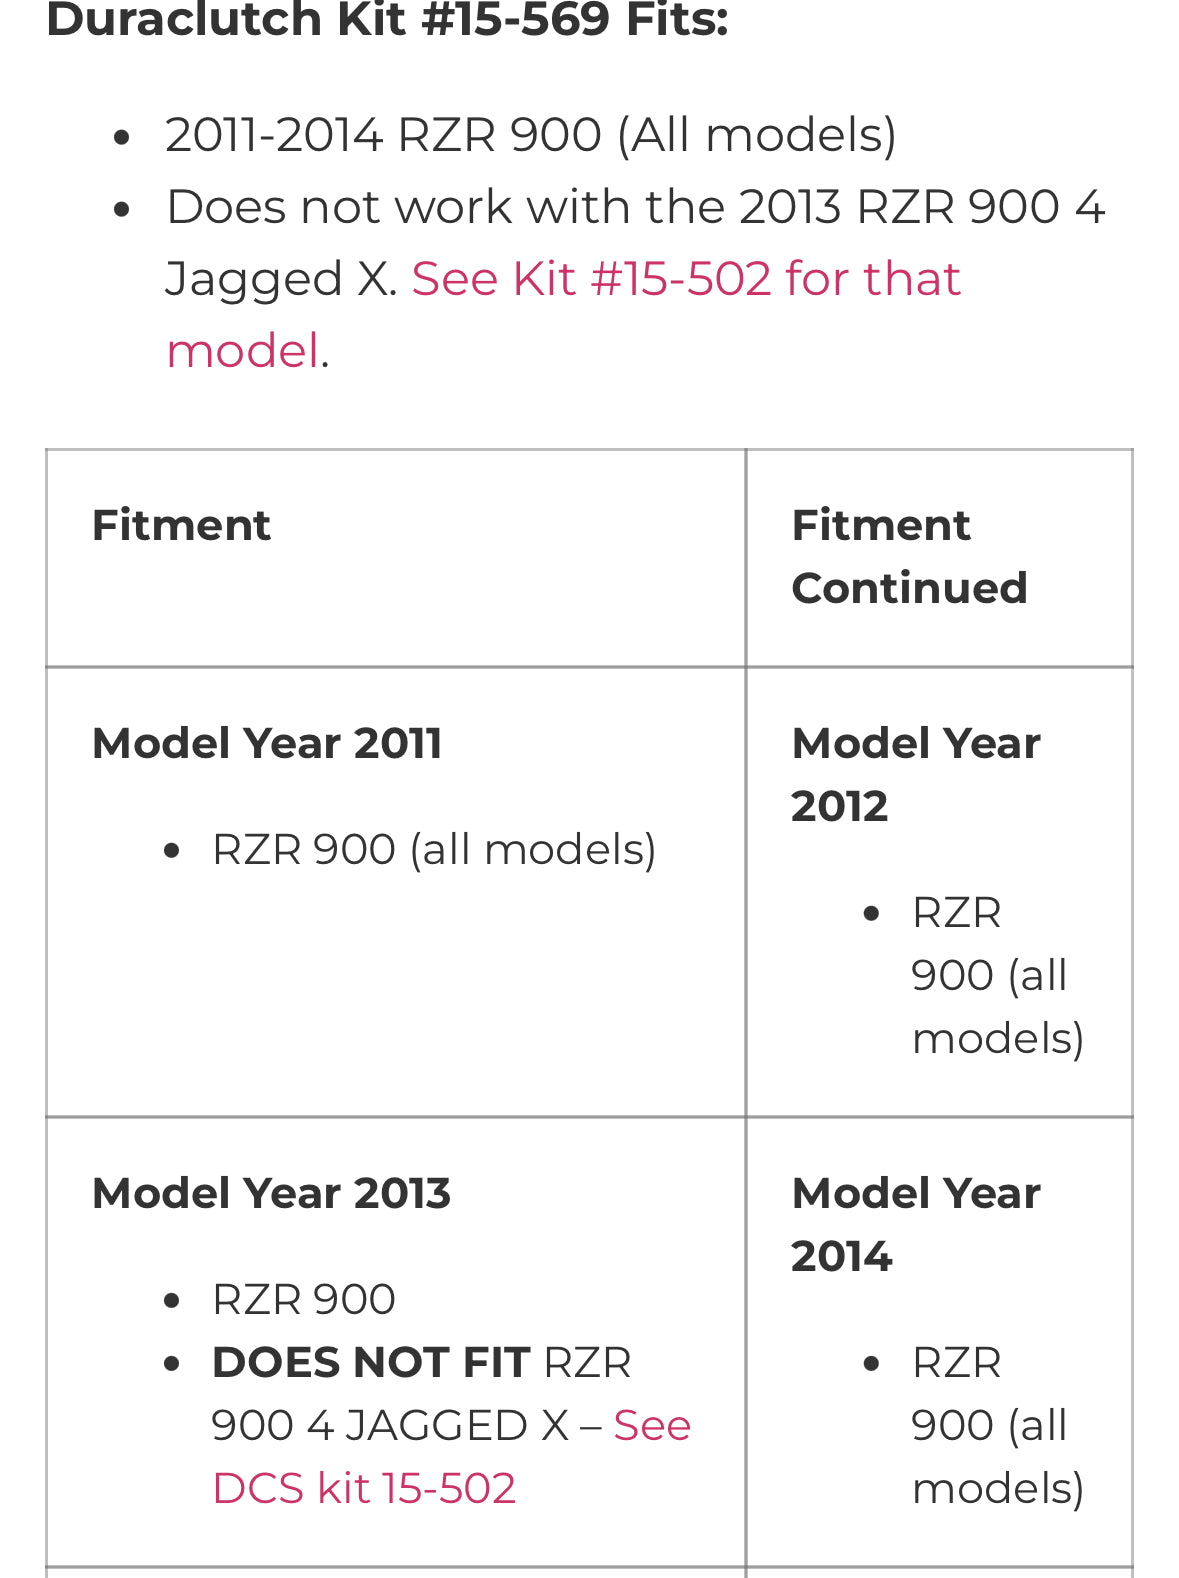 2011-2014 RZR 900 R-Series kit #15-569